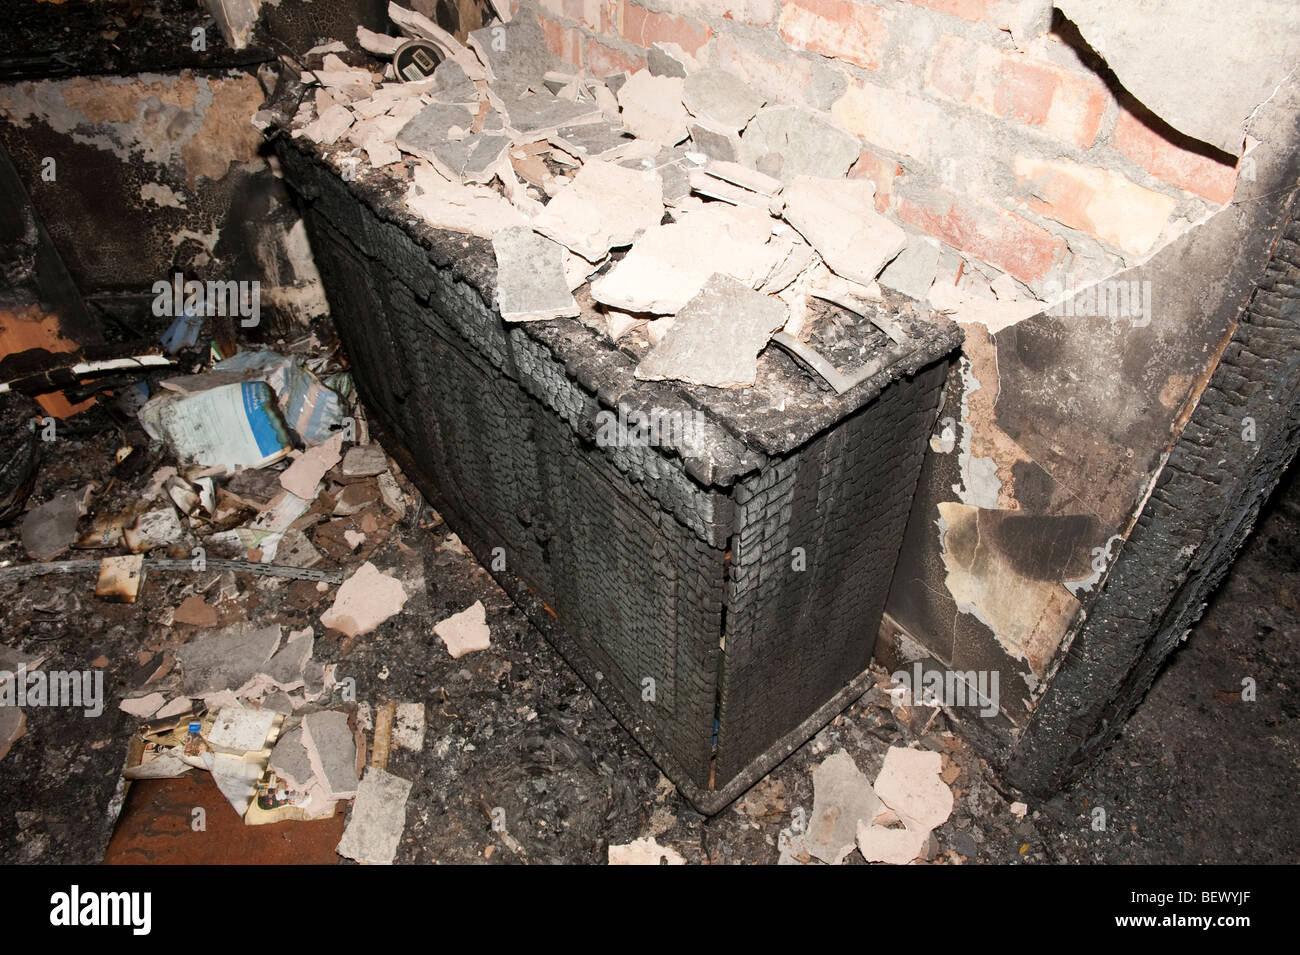 Schweren Hausbrand zeigt zerstört Interieur des Hauses. Verputzen von Wand zeigt hohe Temperaturen, während Feuer erreicht gefallen Stockfoto